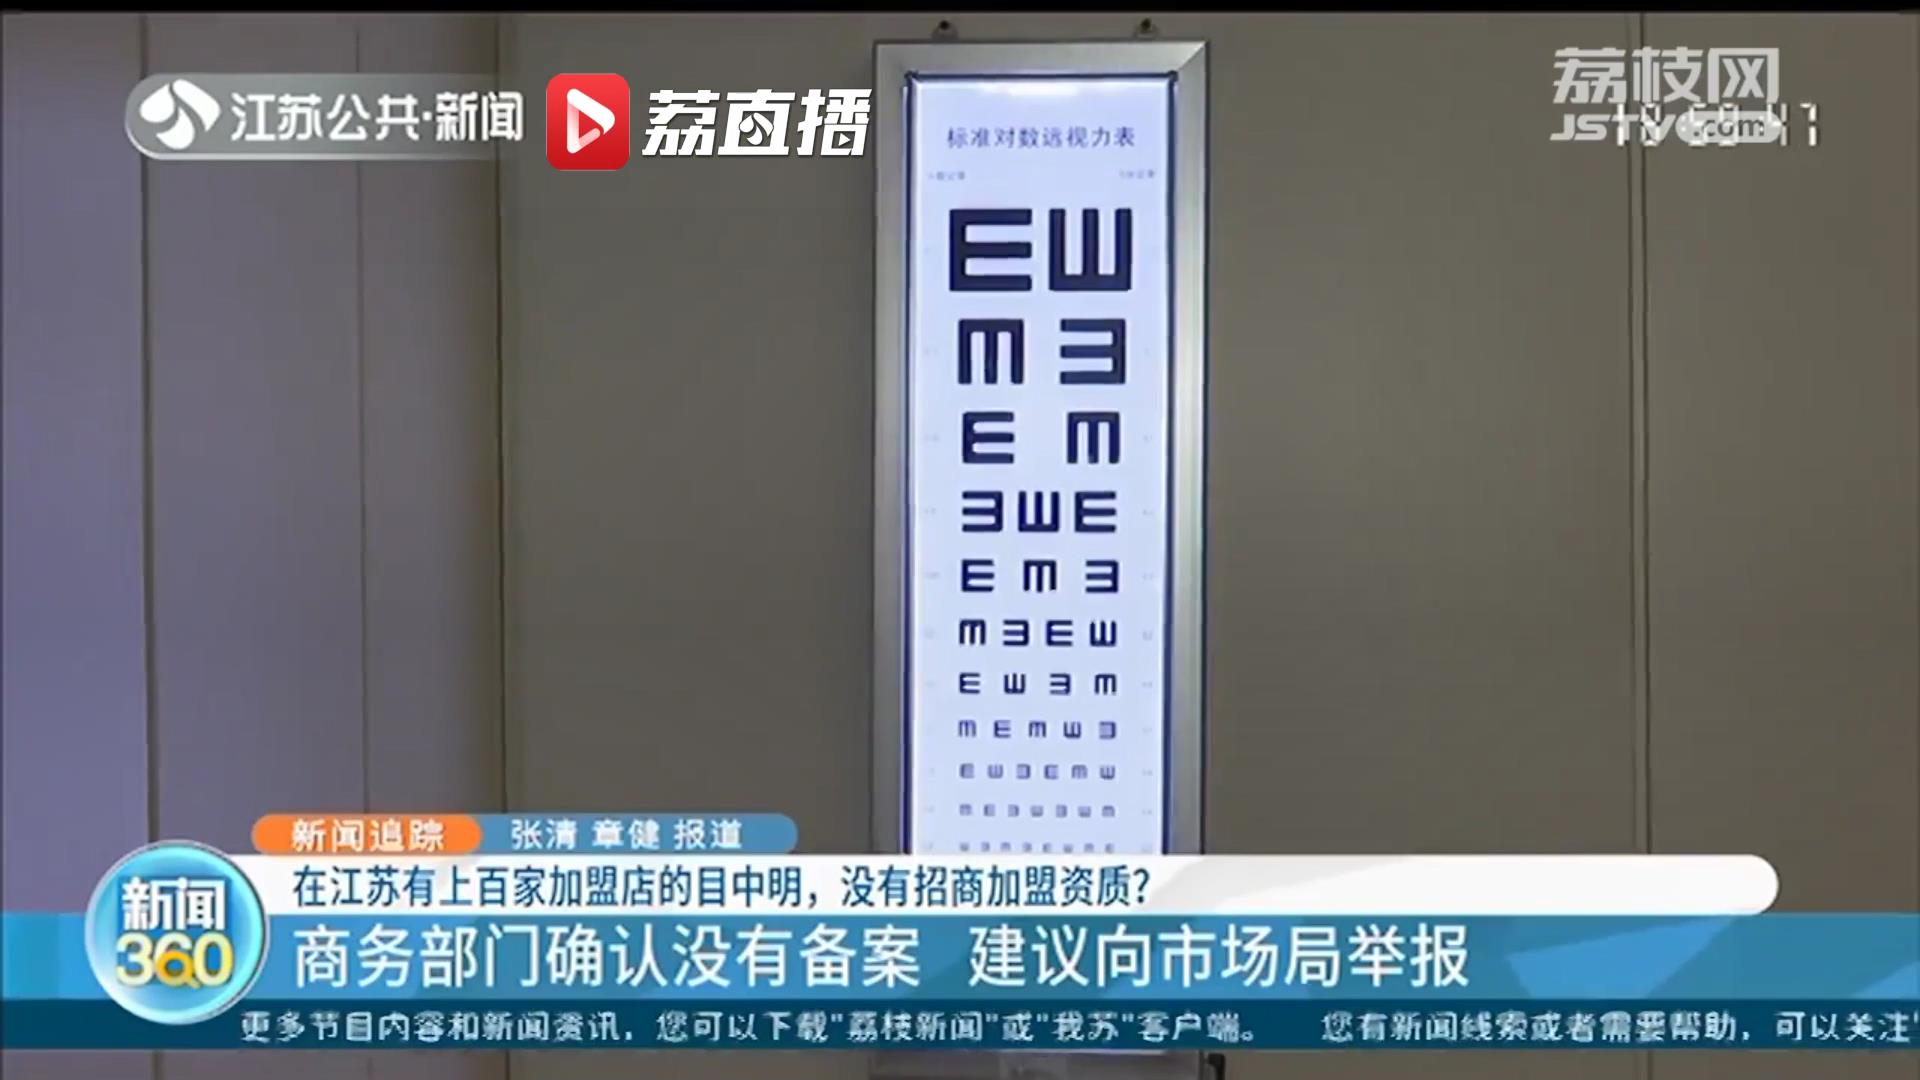 宣称通过按摩提升近视儿童视力 在江苏开了百家加盟店的近视矫正机构竟没有招商加盟备案